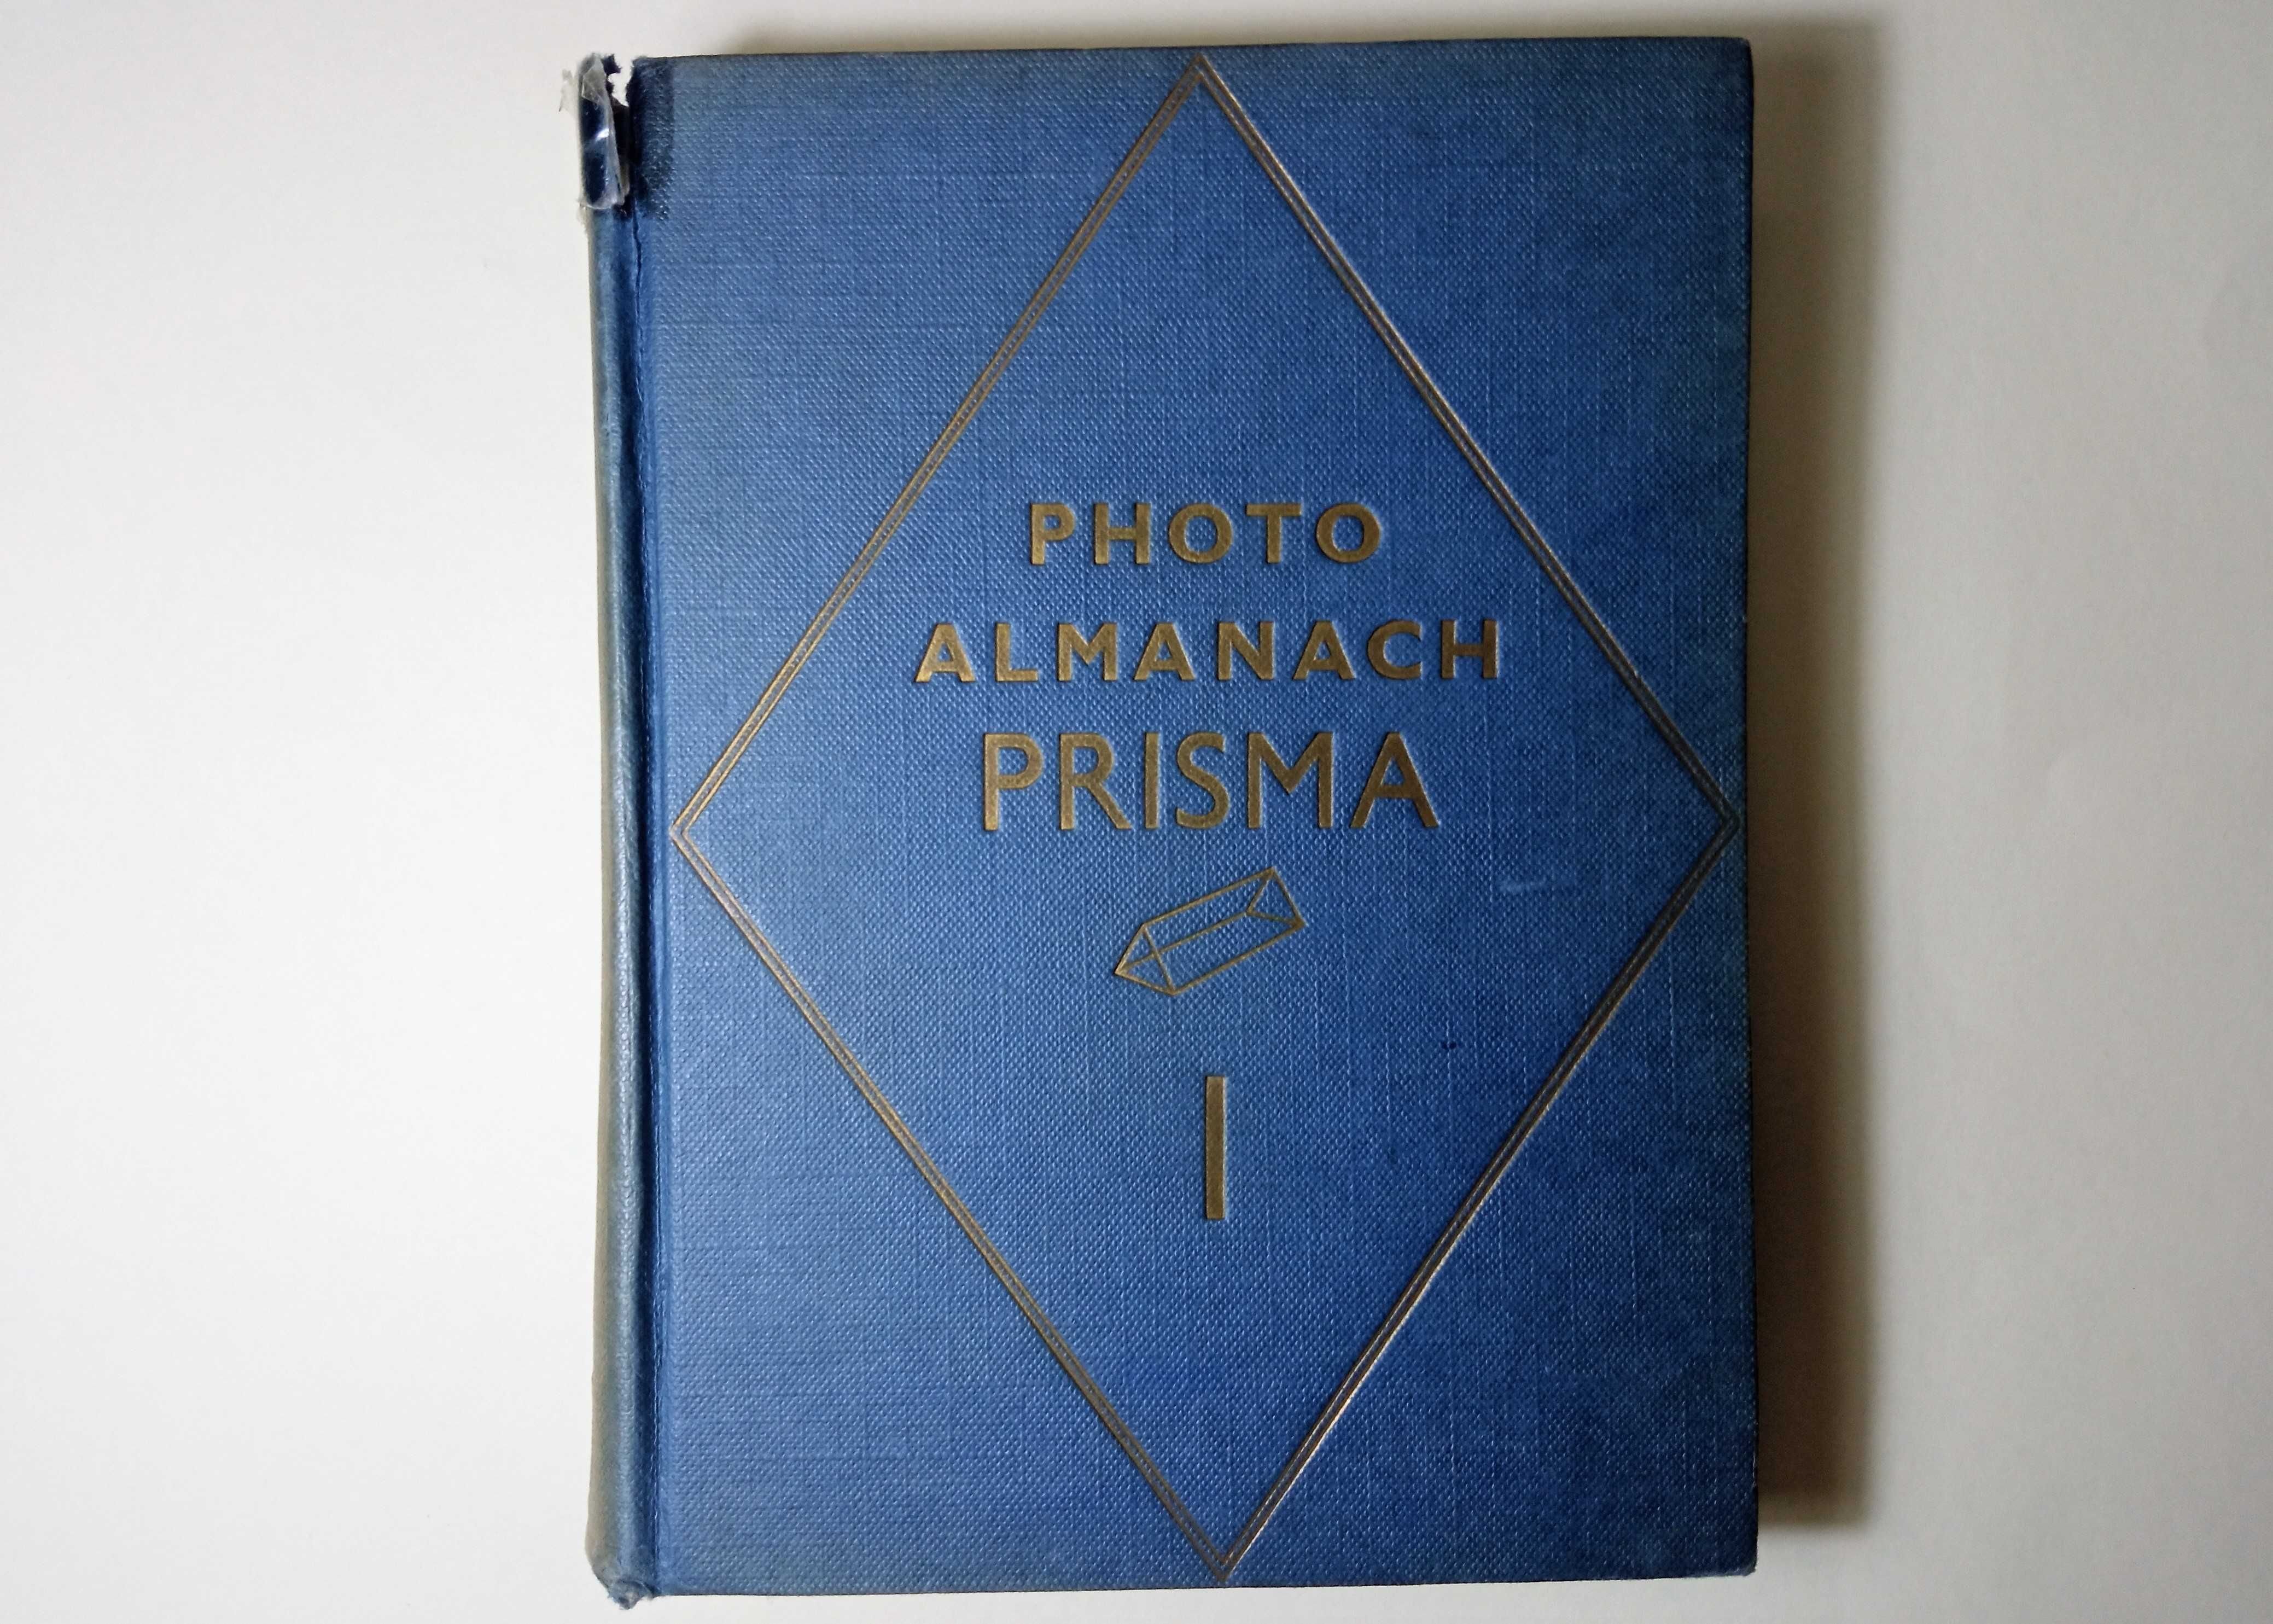 Dicionário de Fotografia. 1938. Em francês.